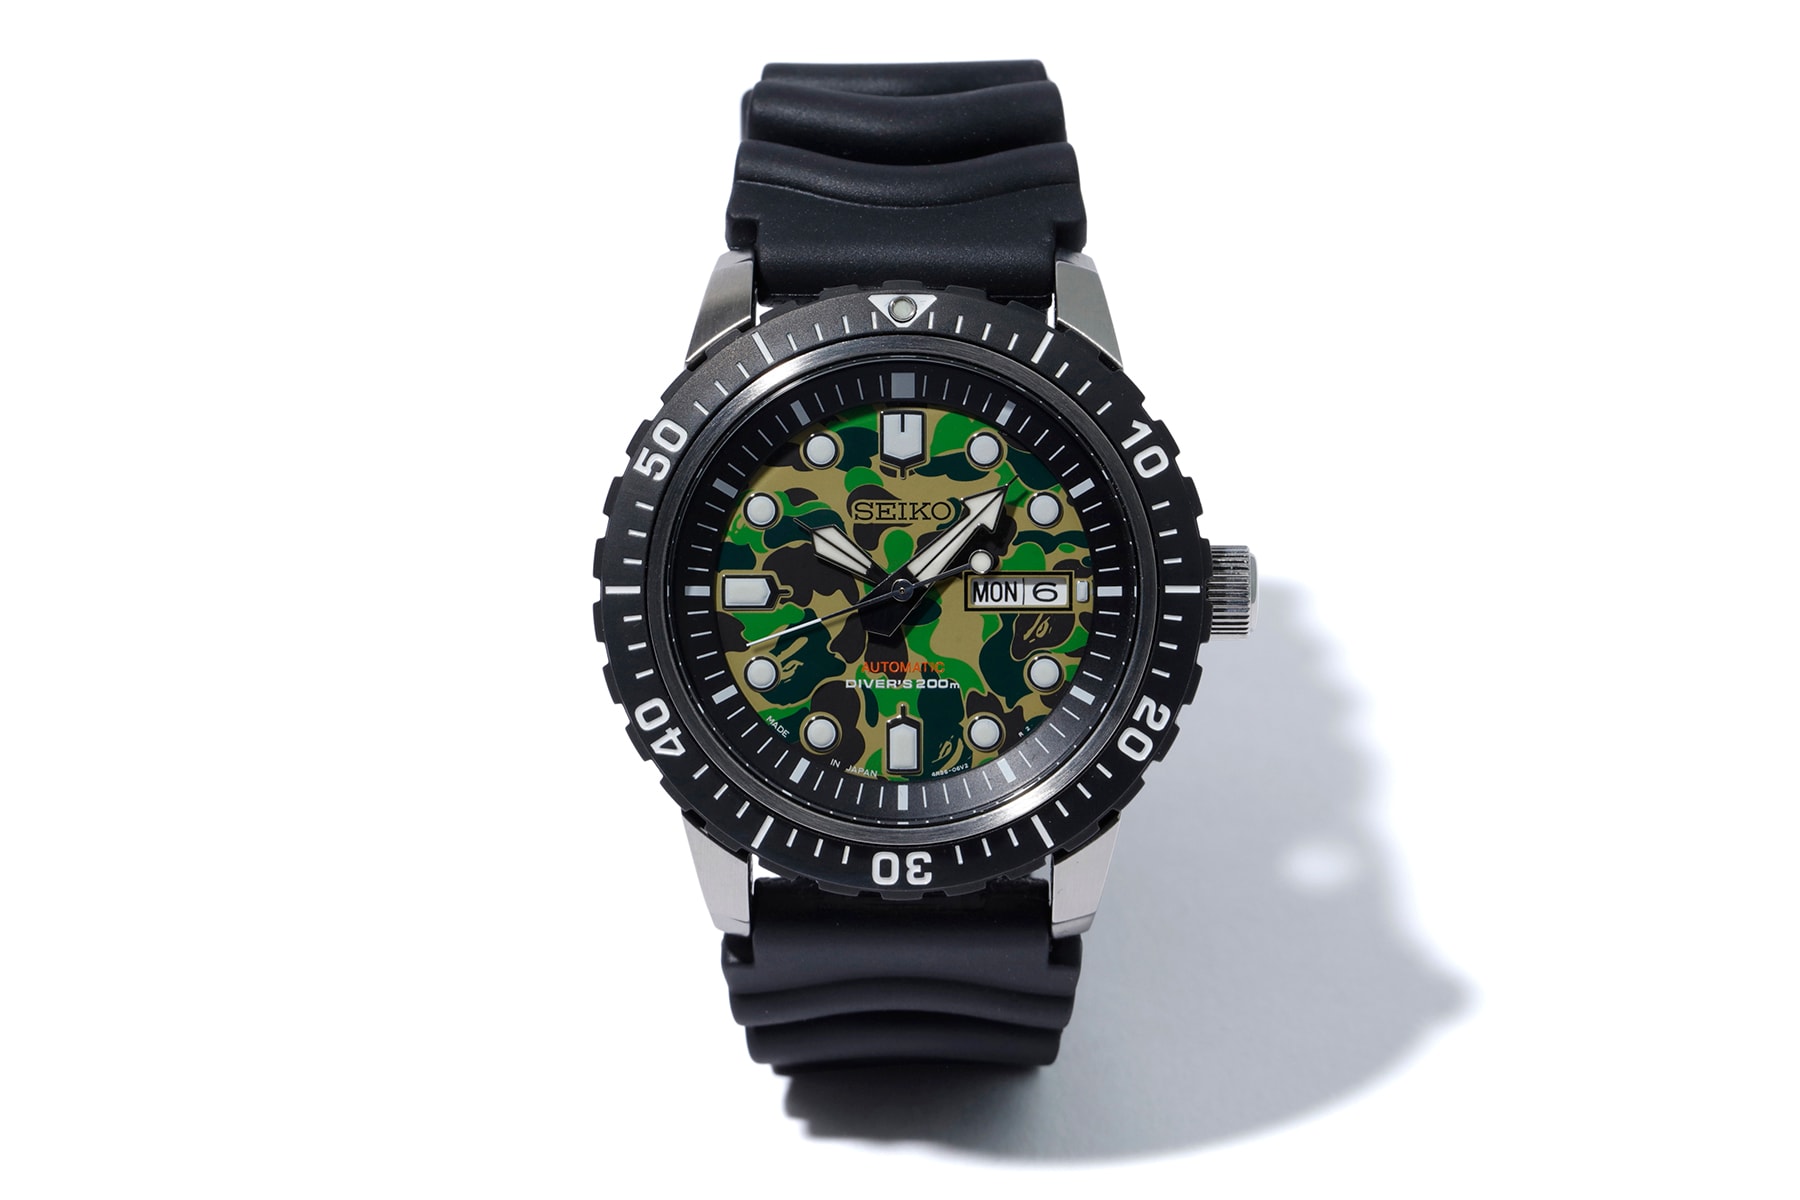 ベイプ セイコー BAPE SEIKO MECHANICAL 時計 ダイバーズウォッチ 腕時計 メカニカル 値段 オンライン 